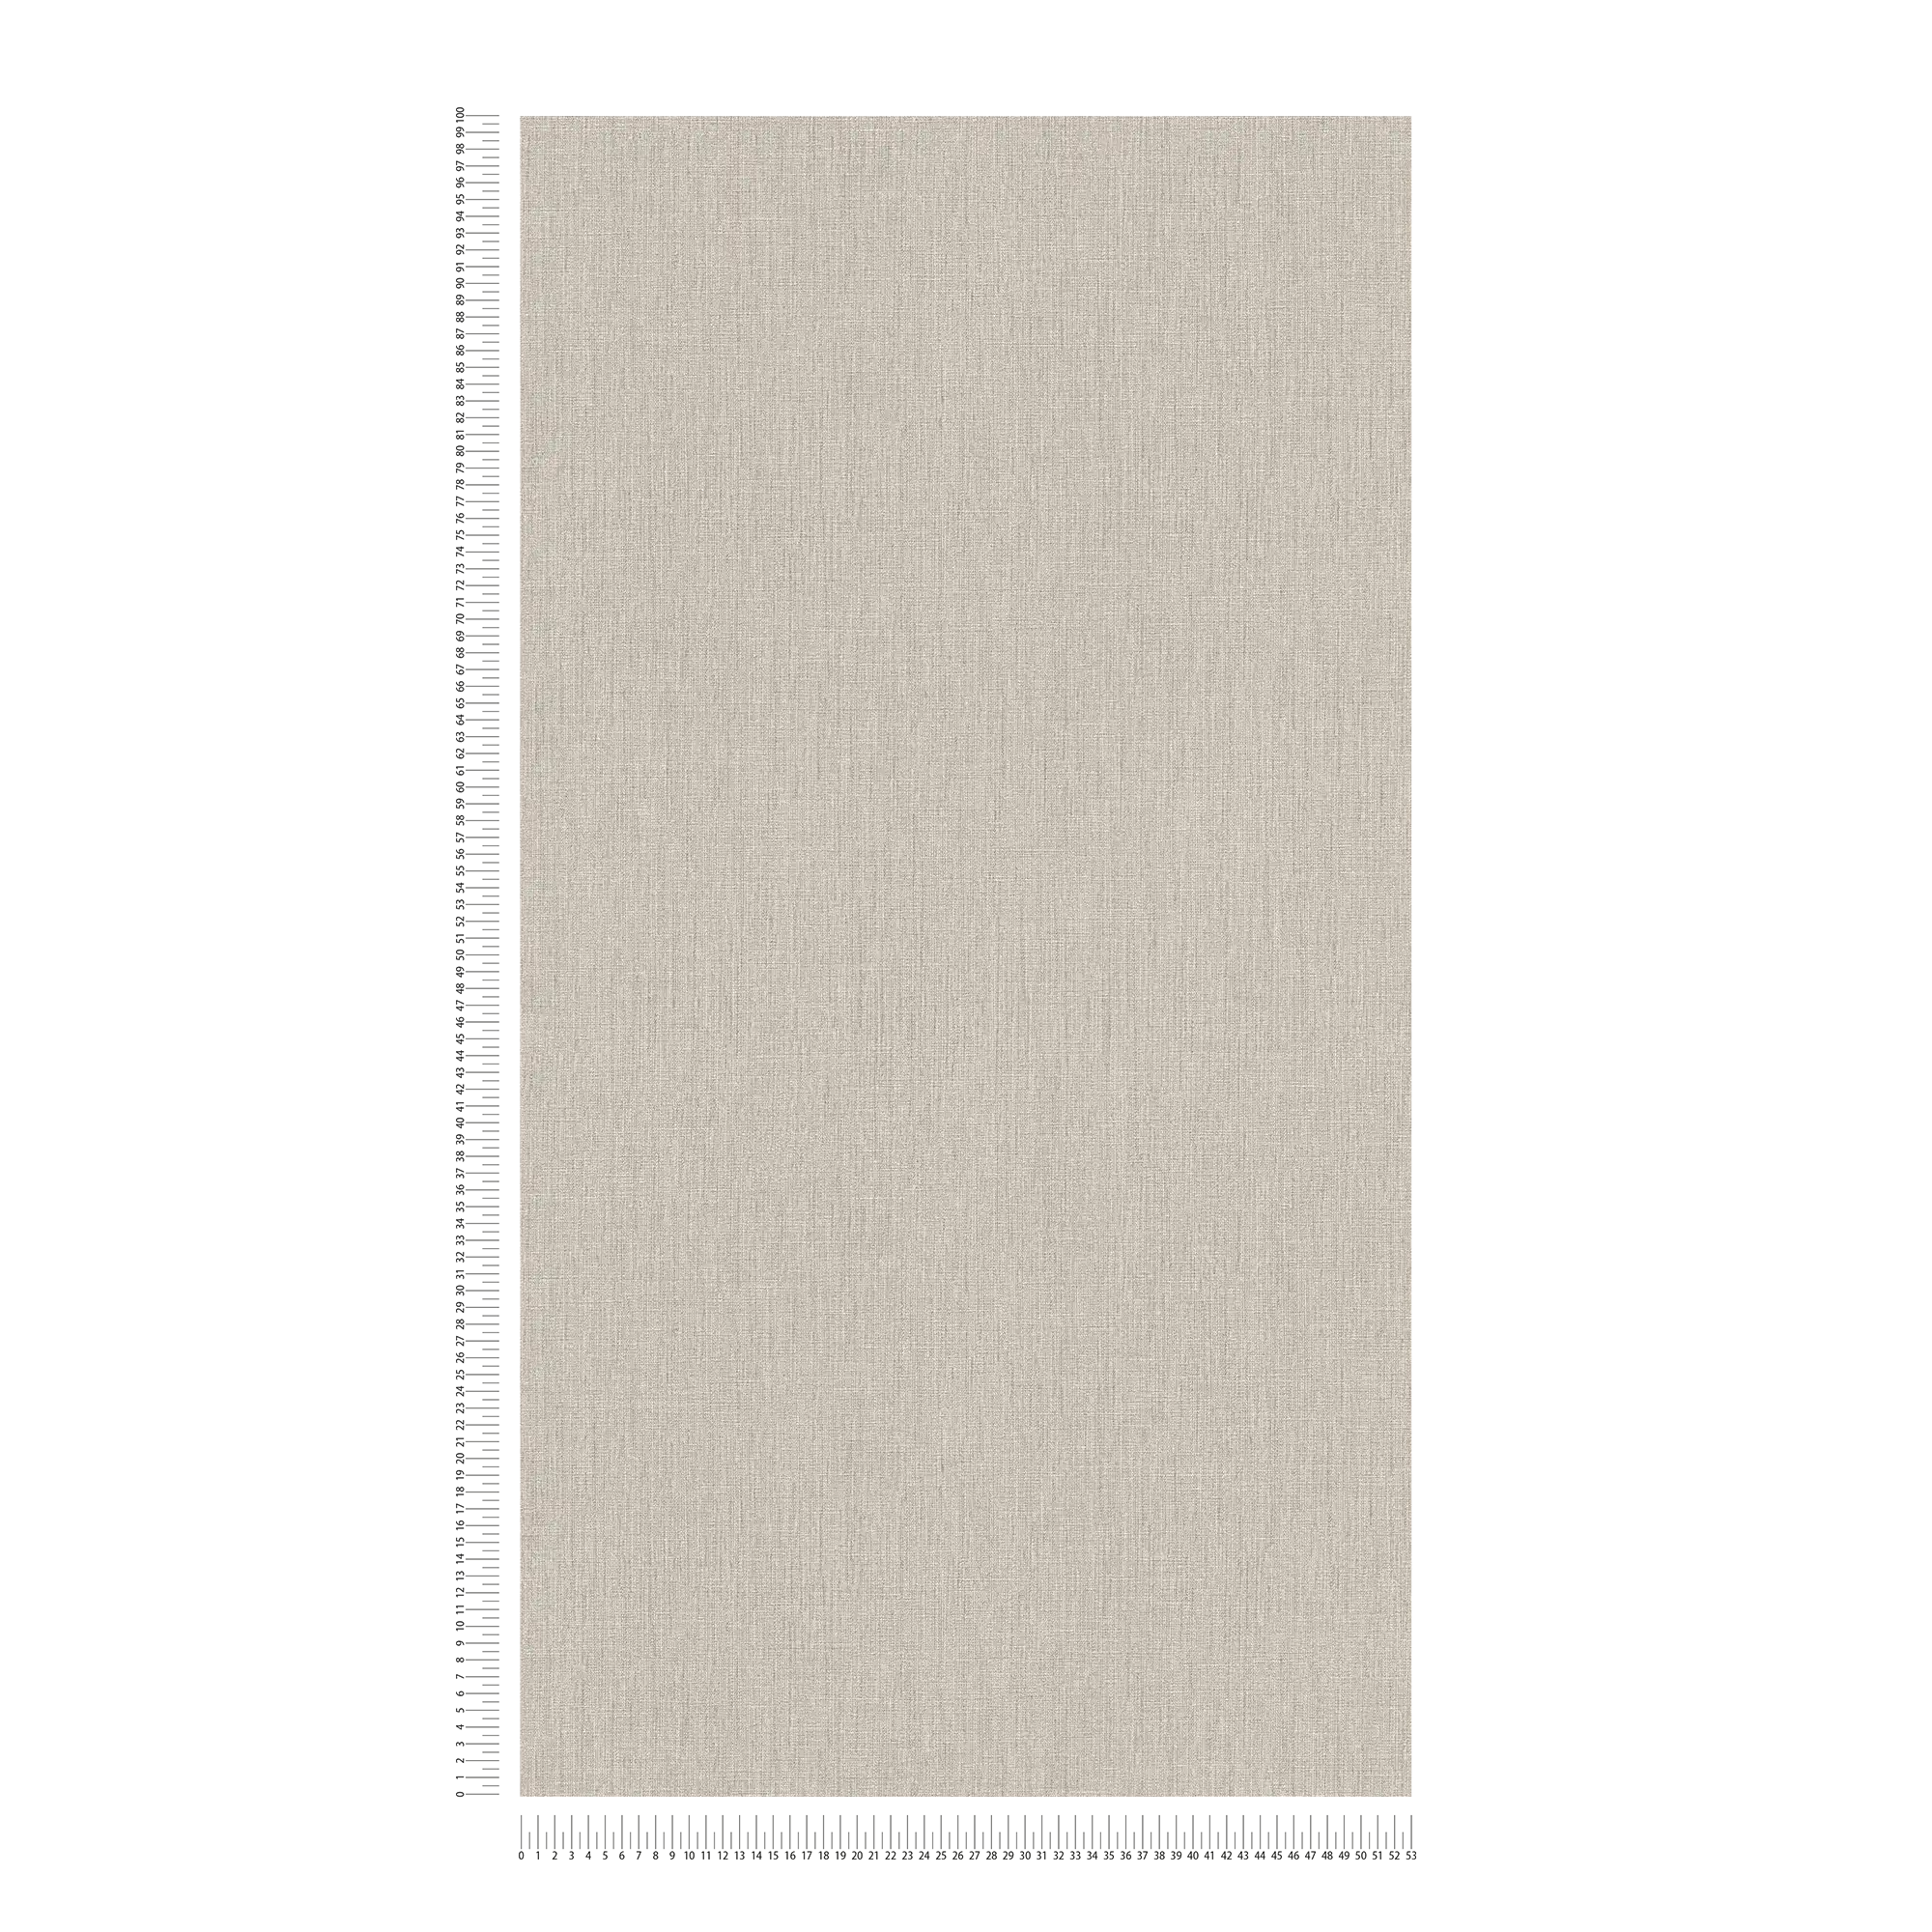             Textured non-woven wallpaper with a matt look - Beige
        